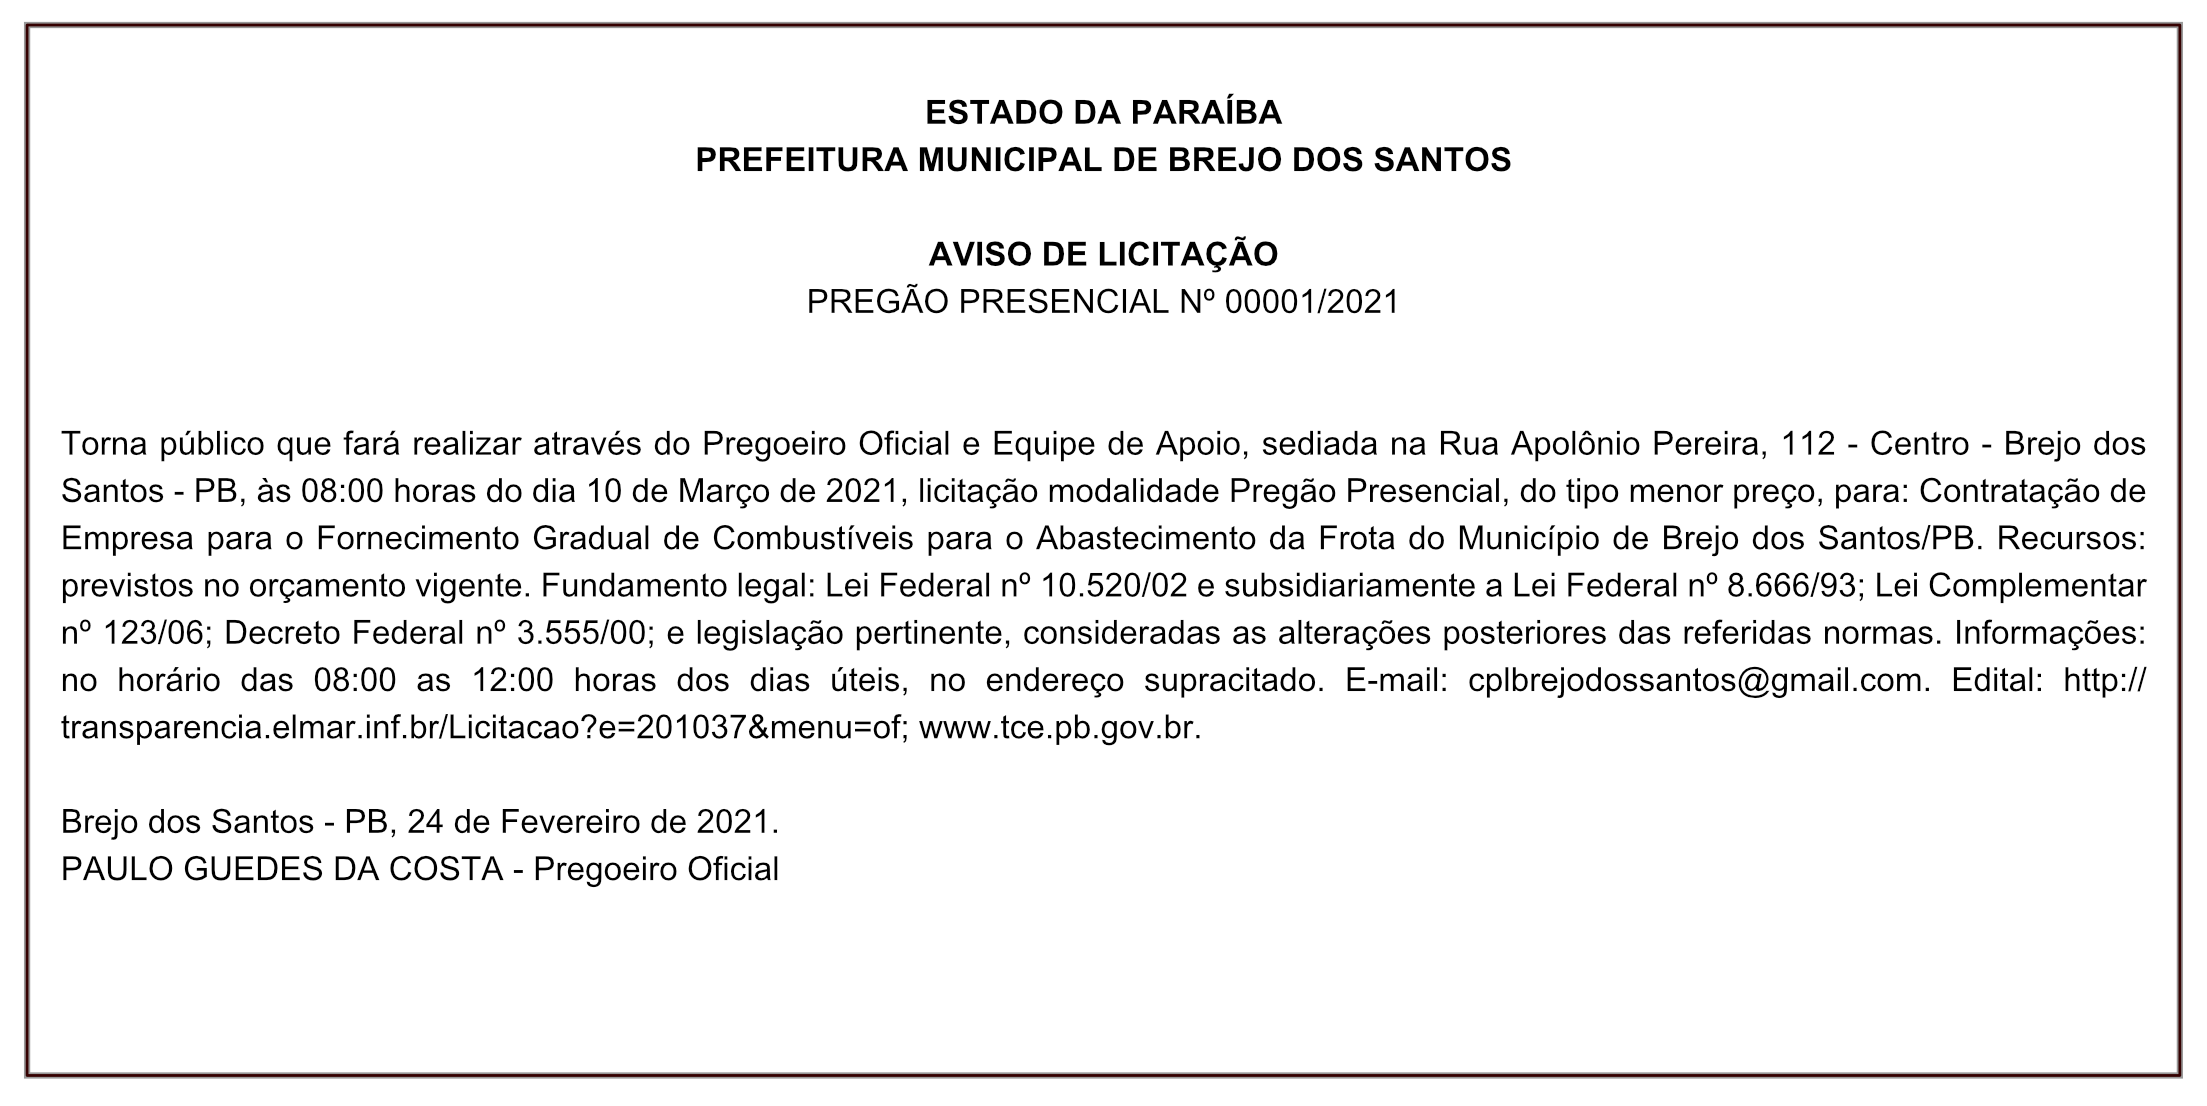 PREFEITURA MUNICIPAL DE BREJO DOS SANTOS – AVISO DE LICITAÇÃO – PREGÃO PRESENCIAL Nº 00001/2021